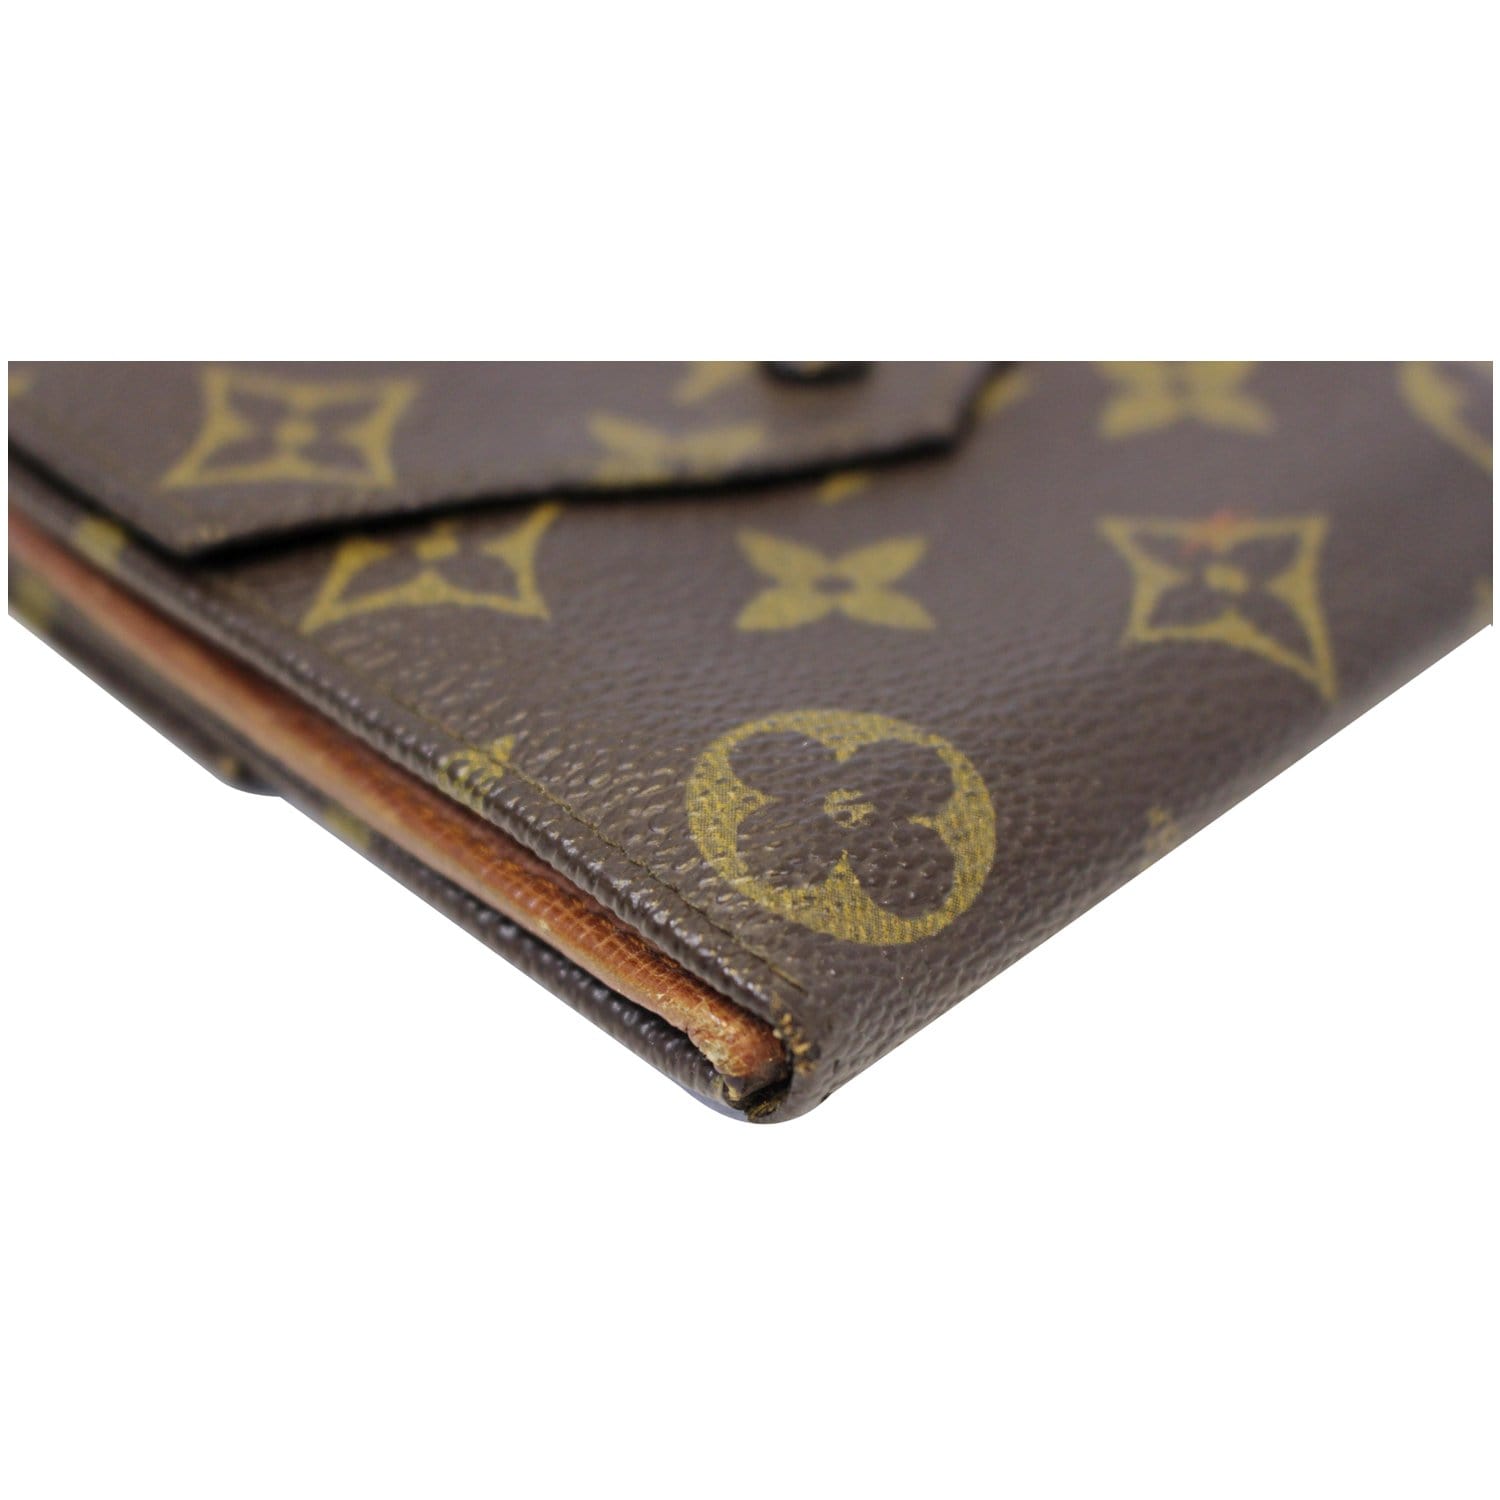 Louis Vuitton Pochette Clés Brown Canvas Wallet (Pre-Owned) - ShopStyle